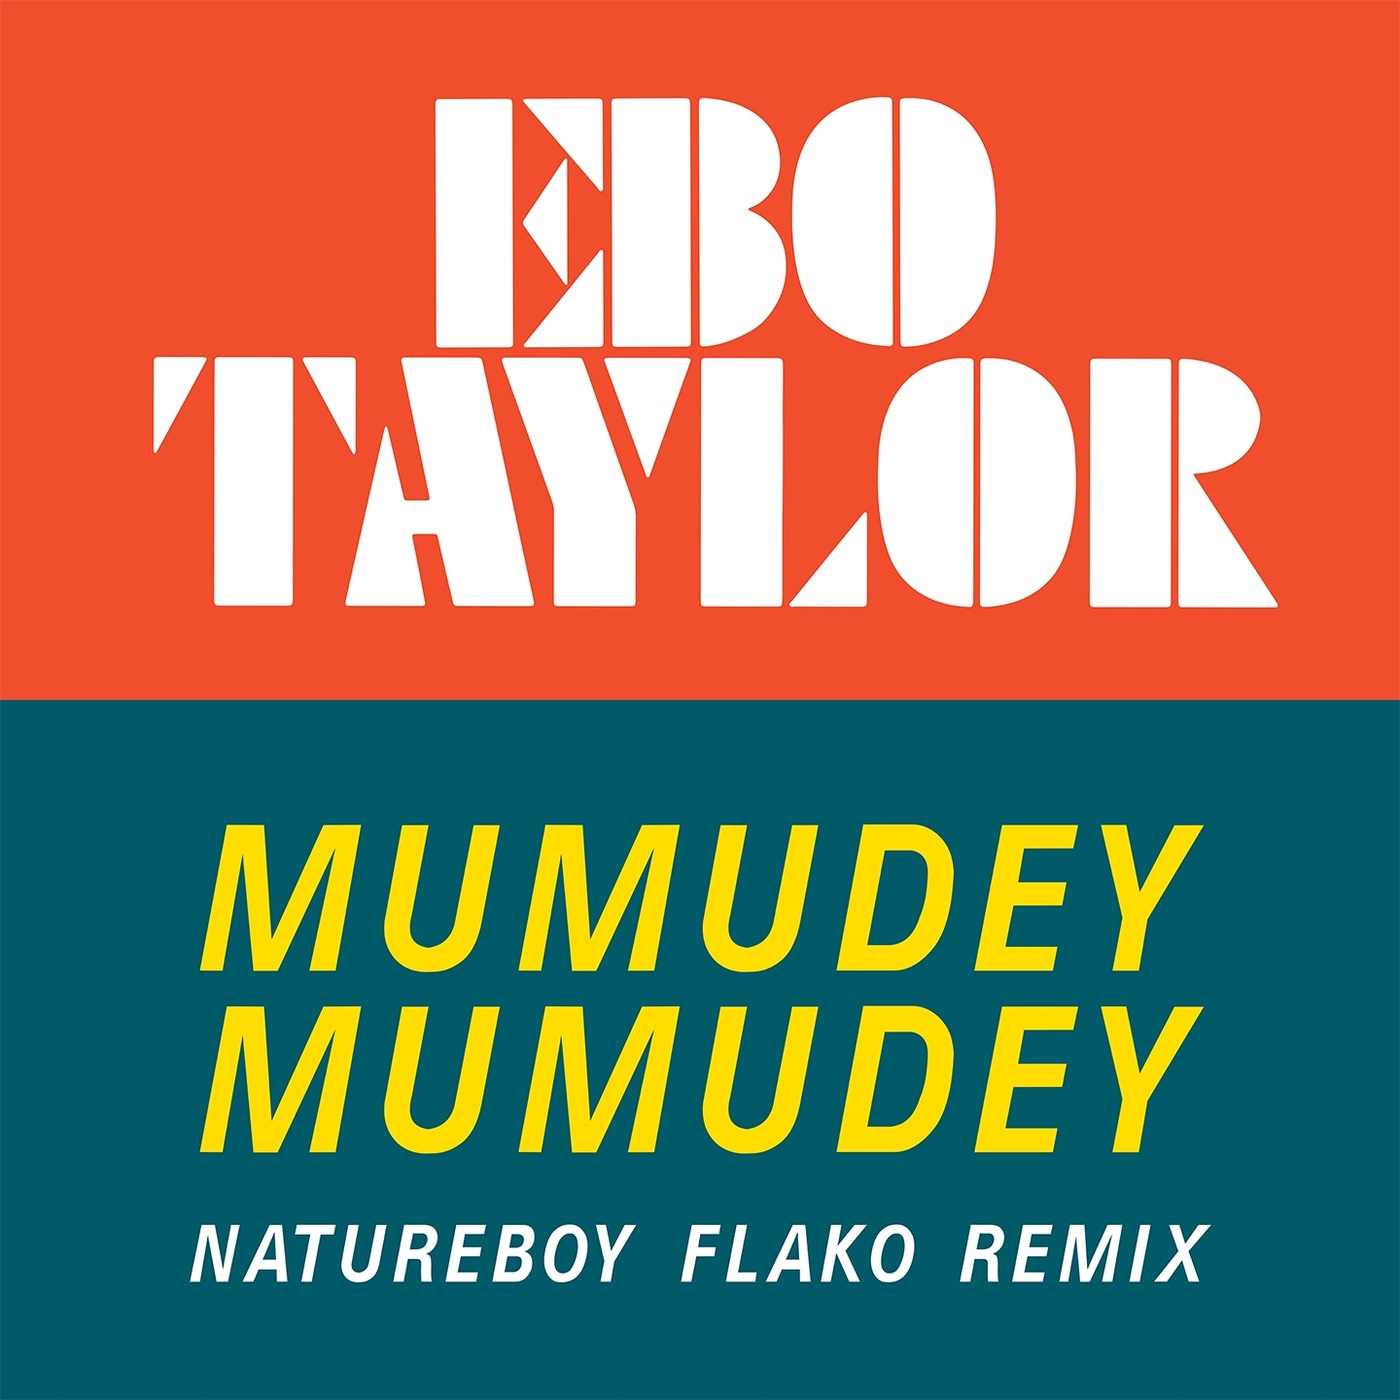 Ebo Taylor - Mumudey Mumudey (Natureboy Flako Remix) / Mr Bongo